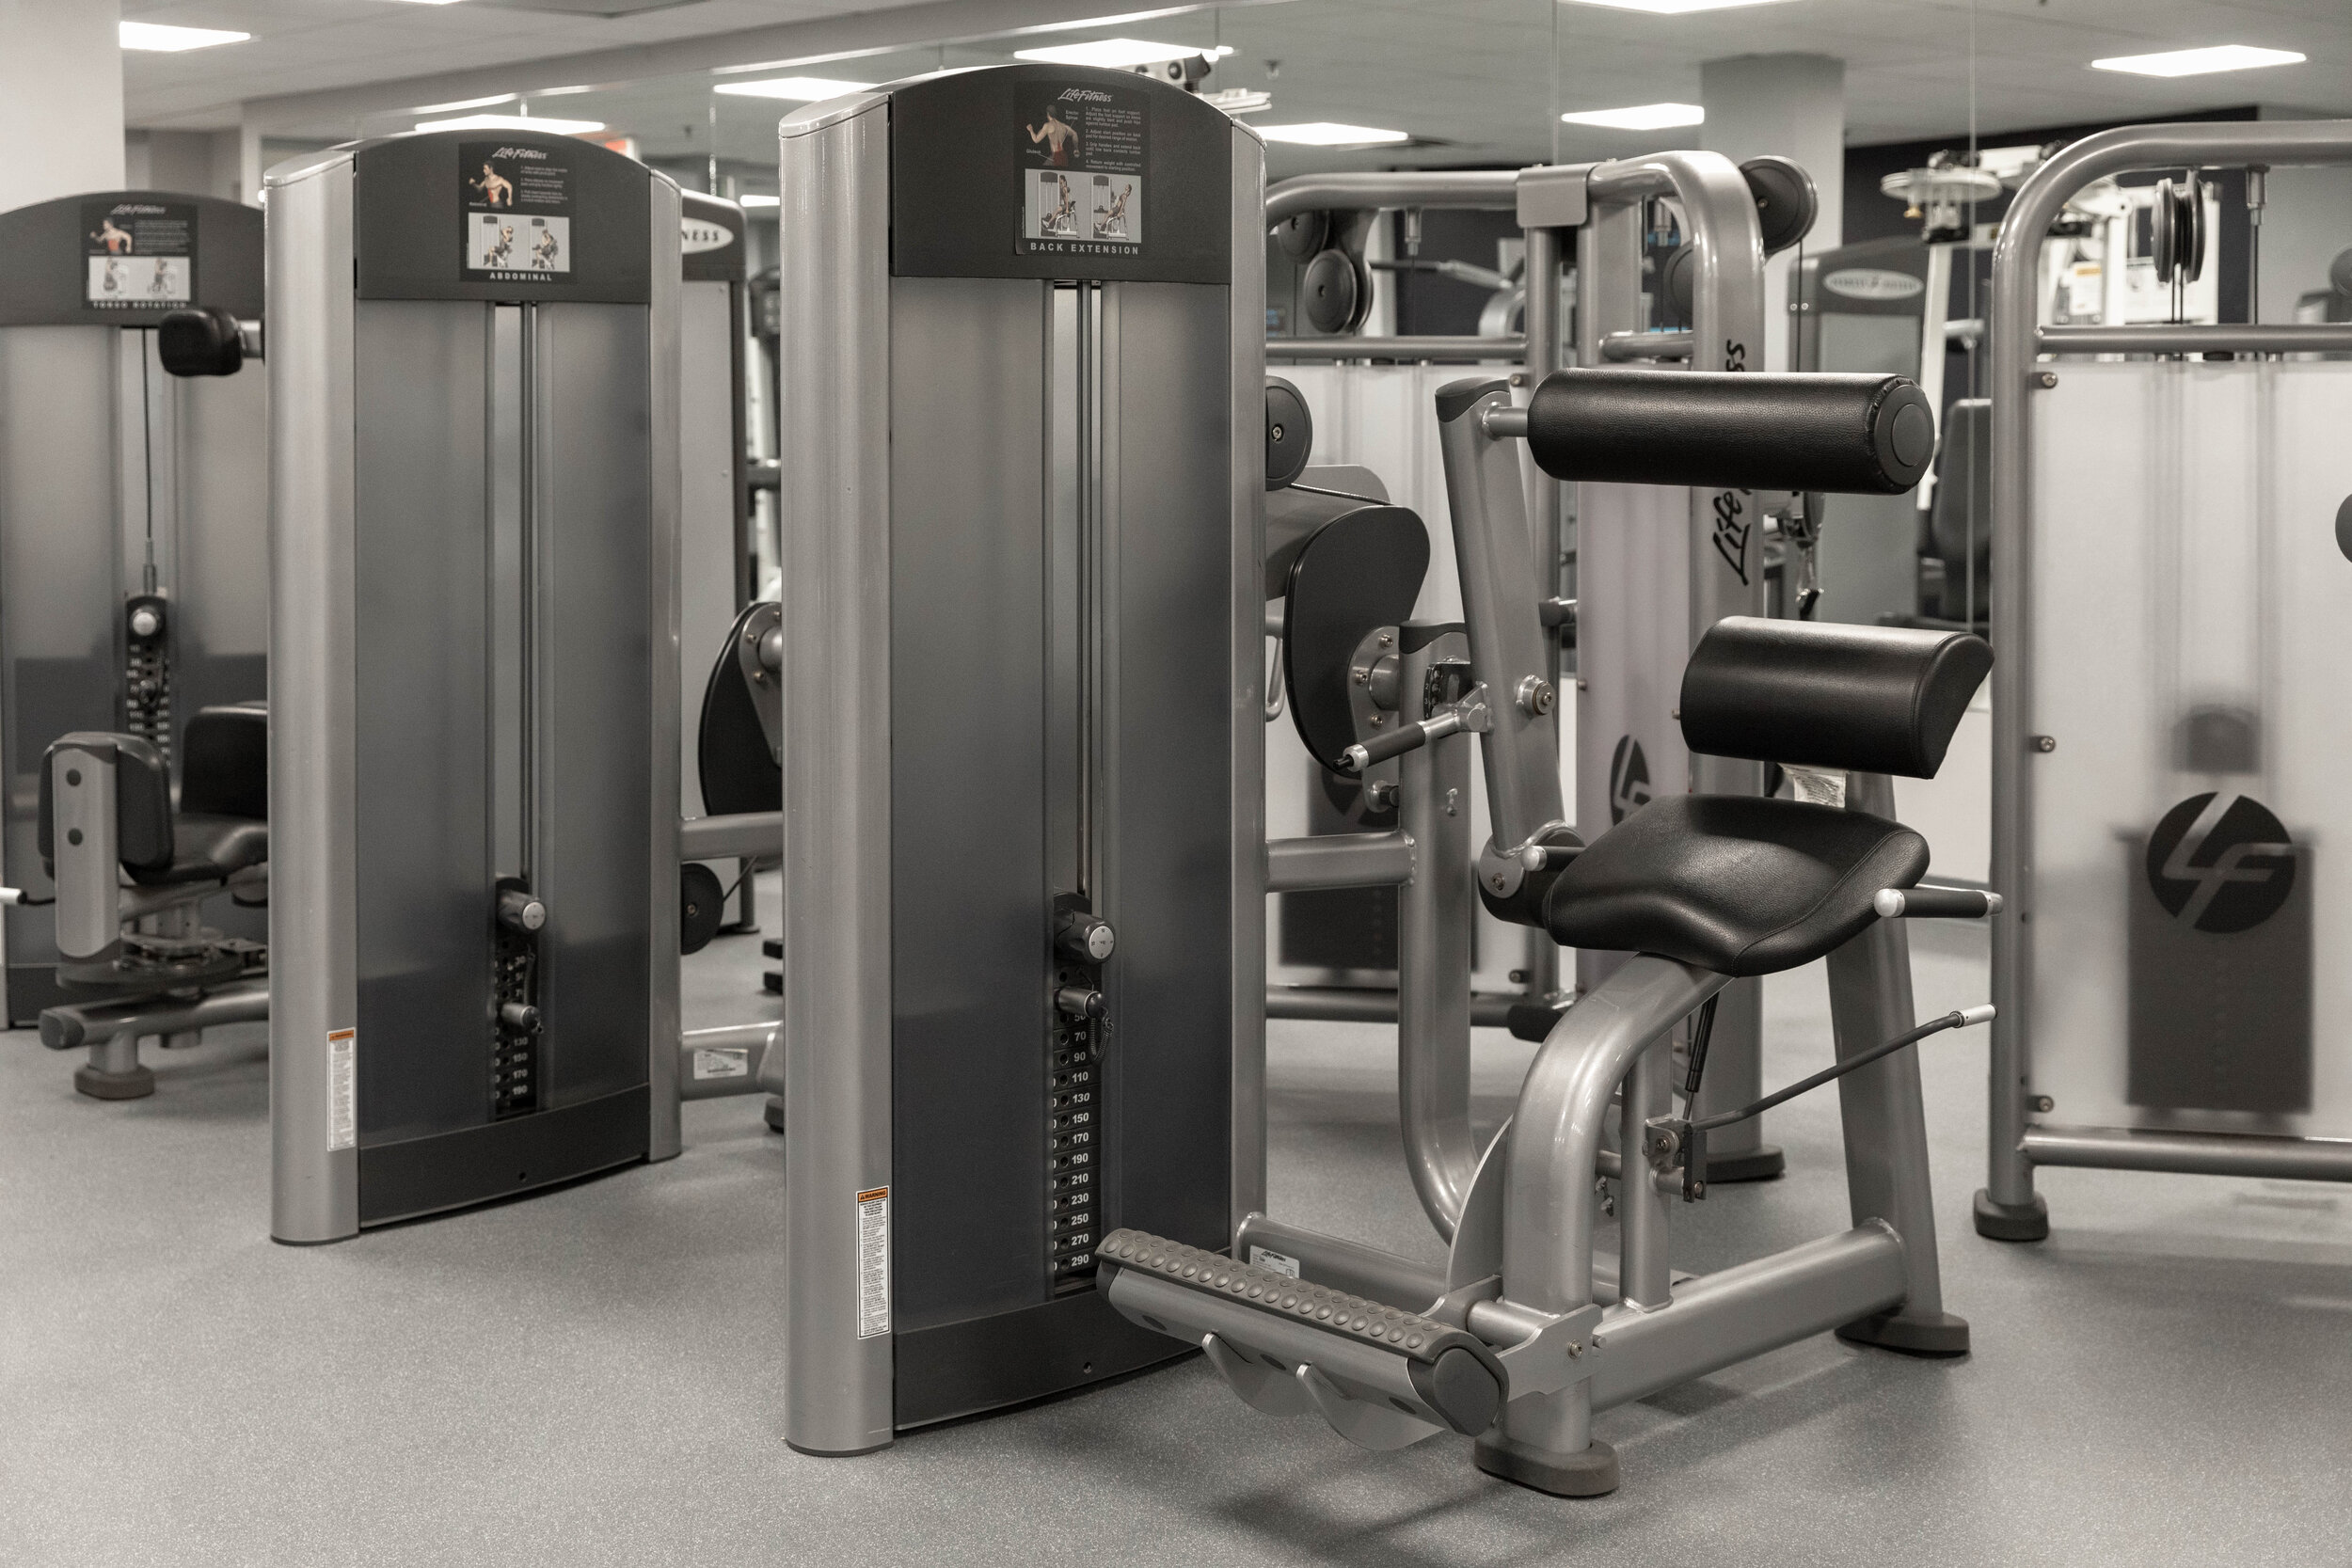 Fitness Center Machines-8.jpg